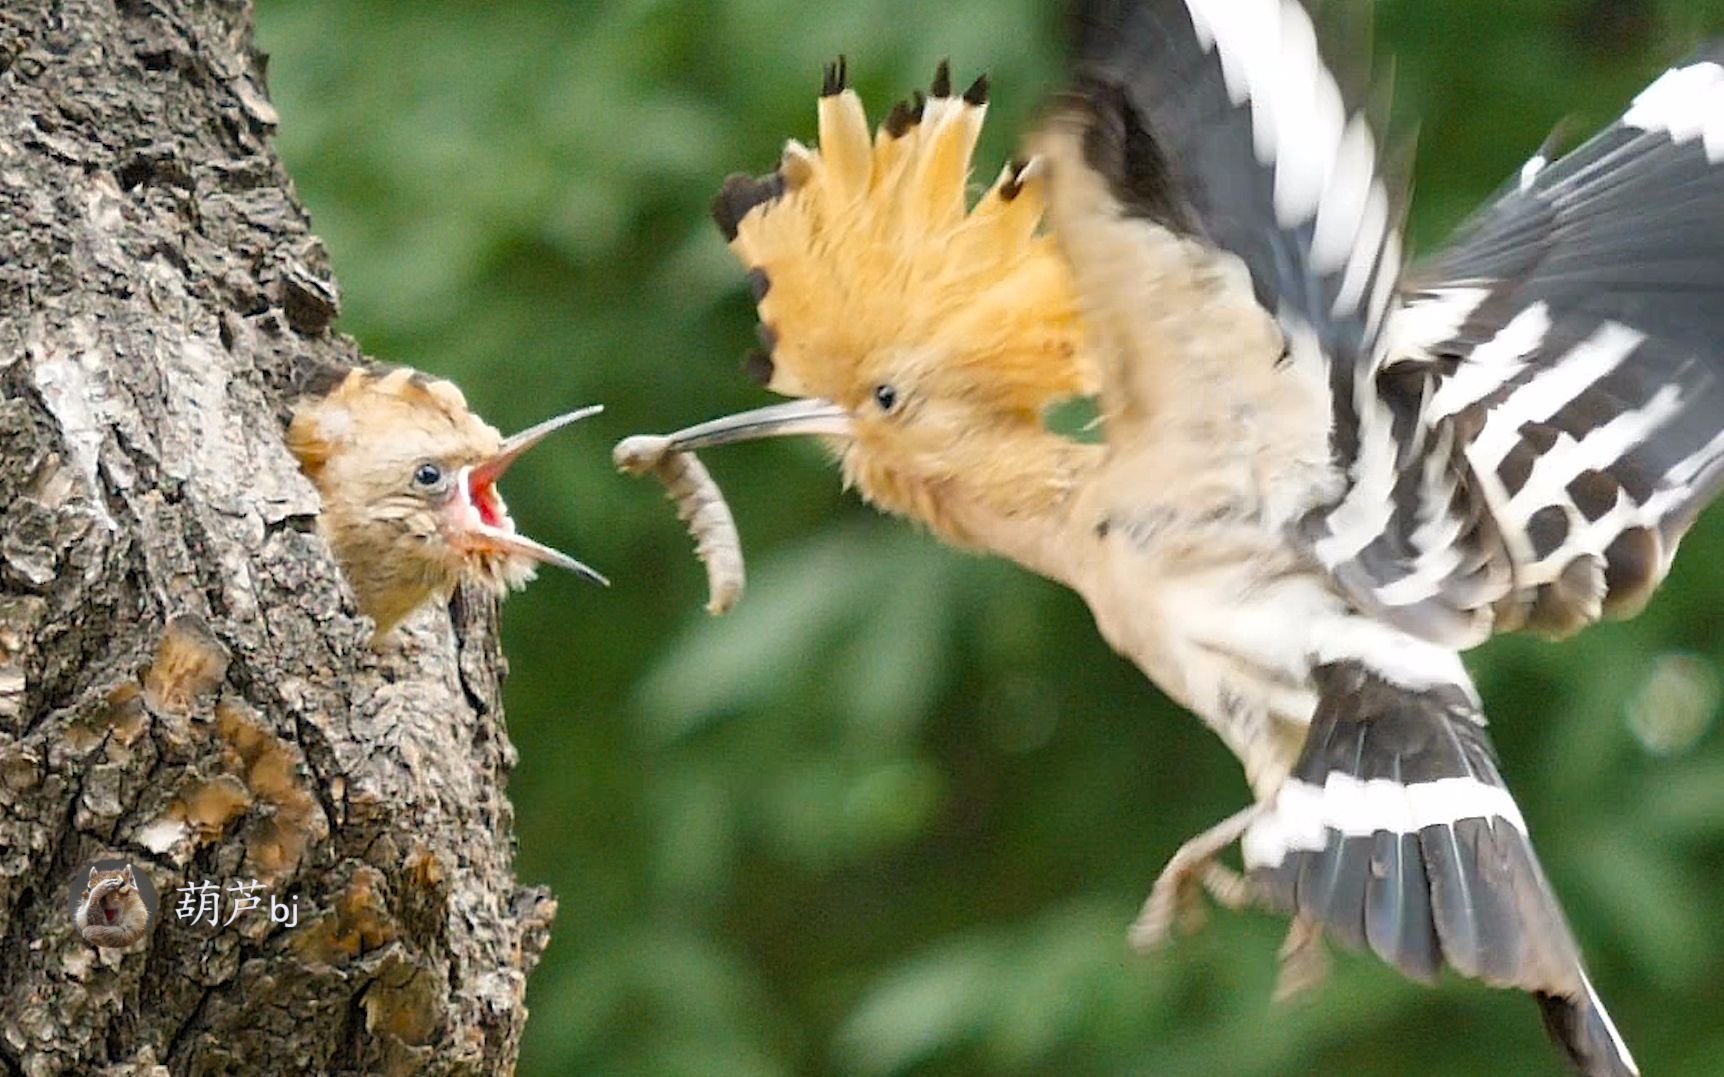 鸟妈妈抓大虫子喂食幼鸟,一只已经出窝的小鸟再次回窝与兄妹挣食